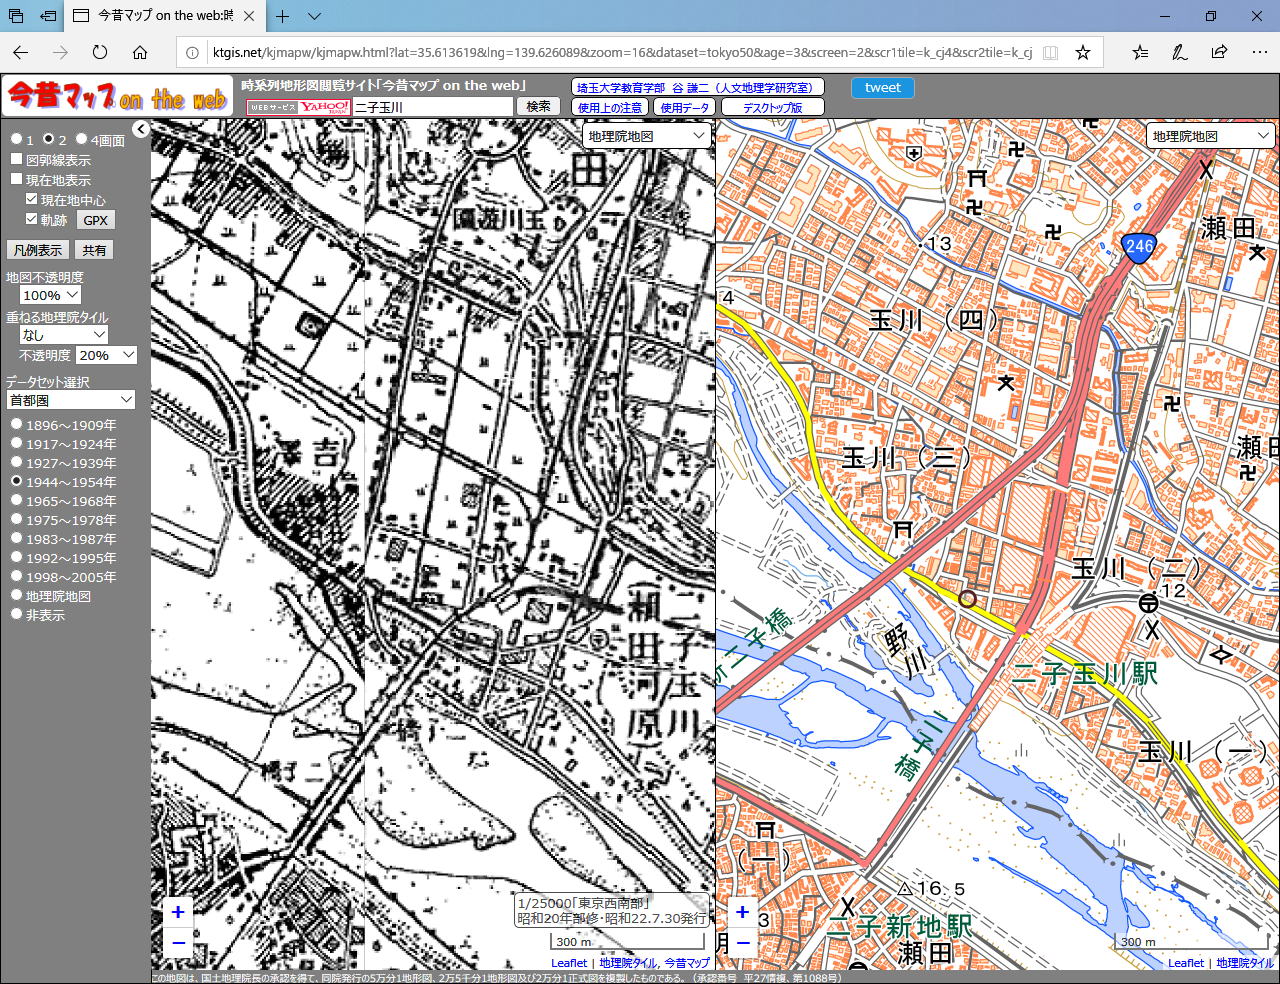 この土地には何があった？ 古地図と現在の地図を比較できる「今昔マップ on the web」【水害・地震への備えに】